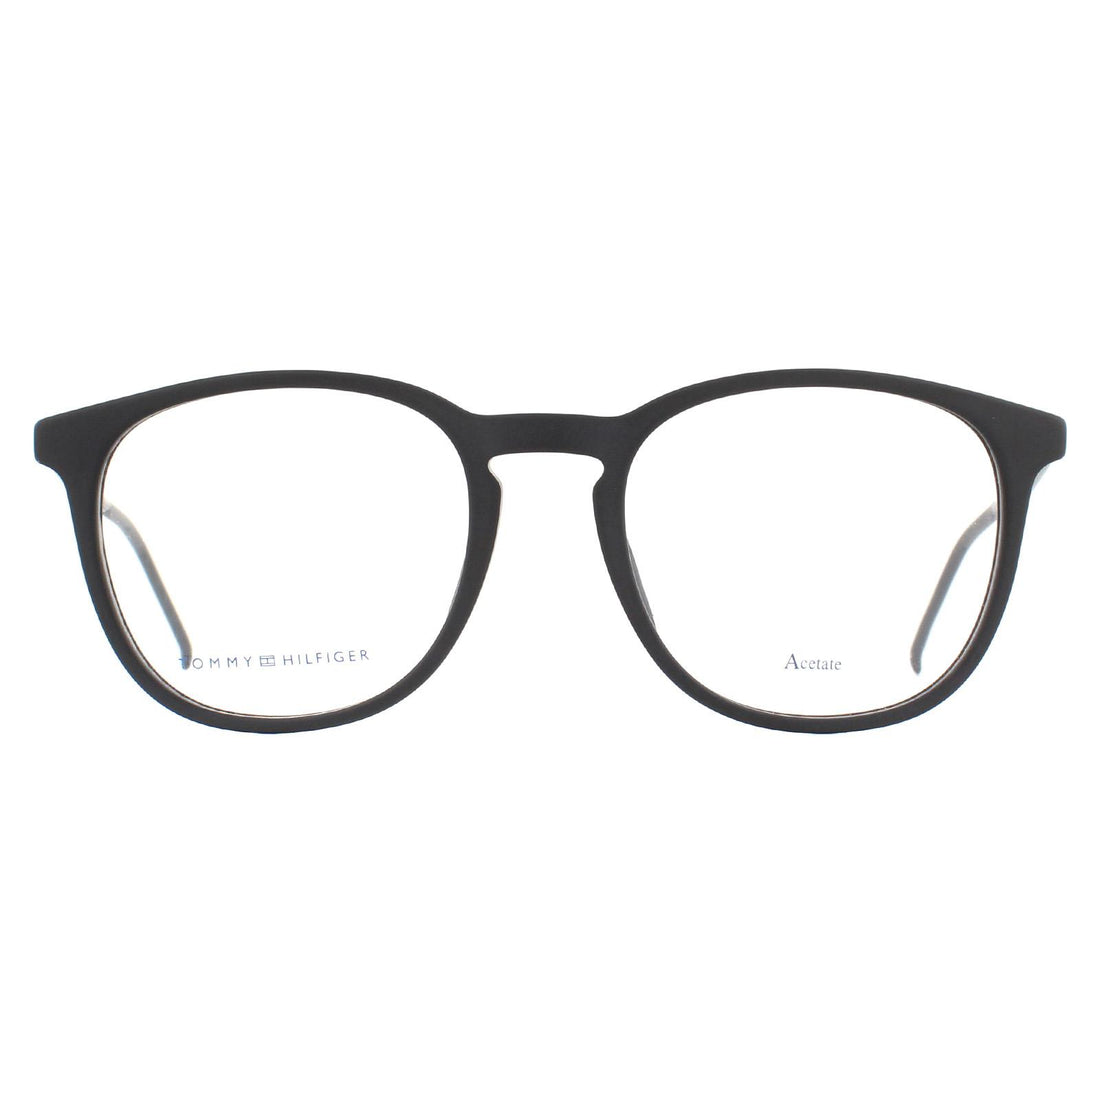 Tommy Hilfiger TH 1706 Glasses Frames Matte Black